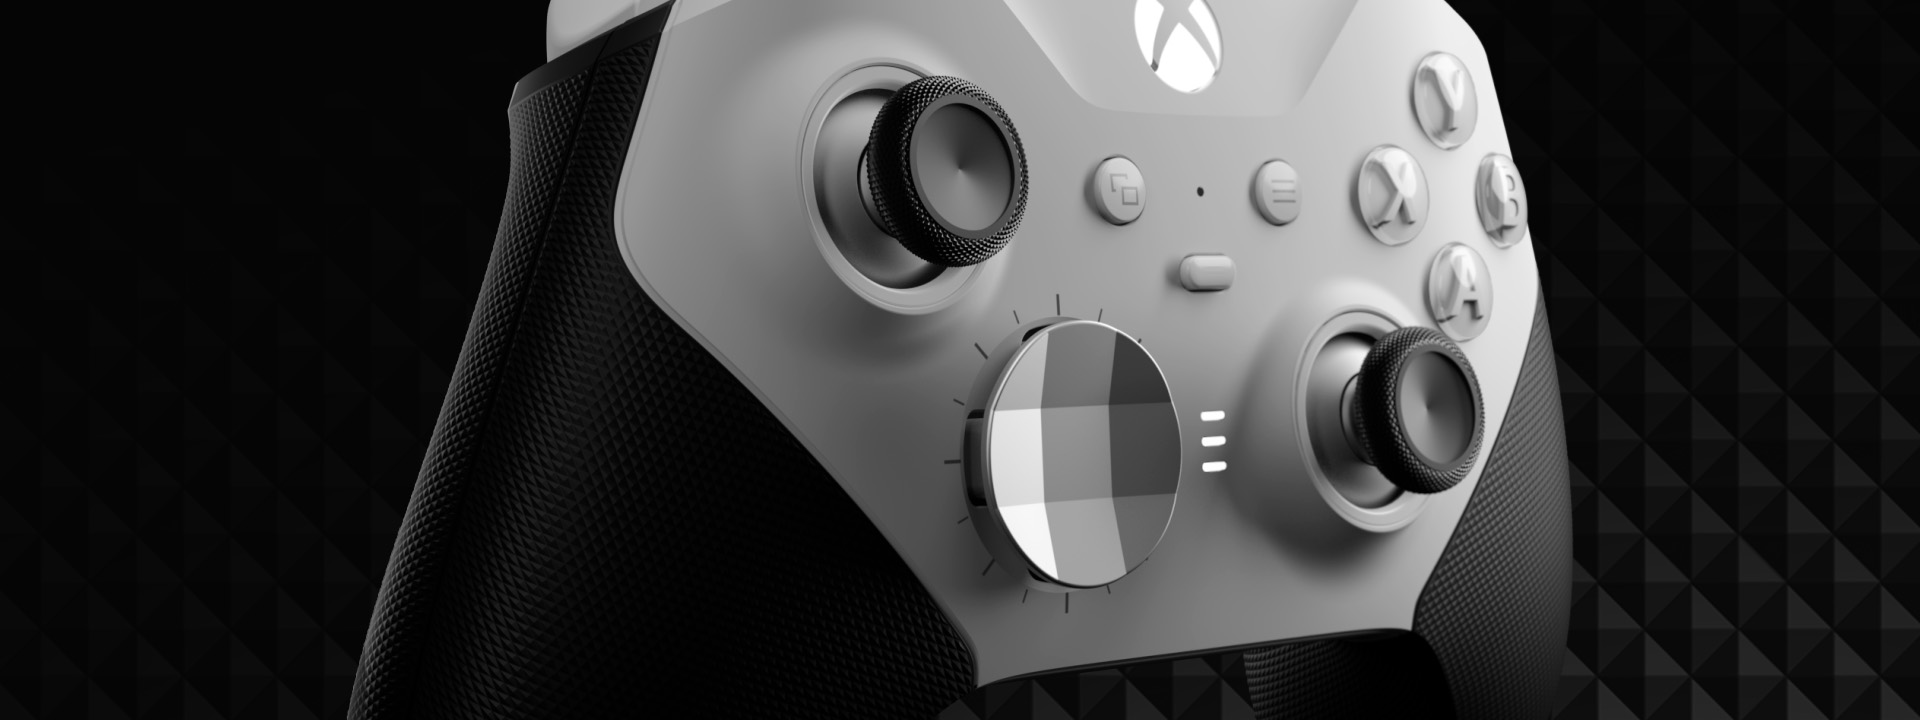 Control Xbox Elite Series 2 Core blanco - Laaca Gaming y Tecnología